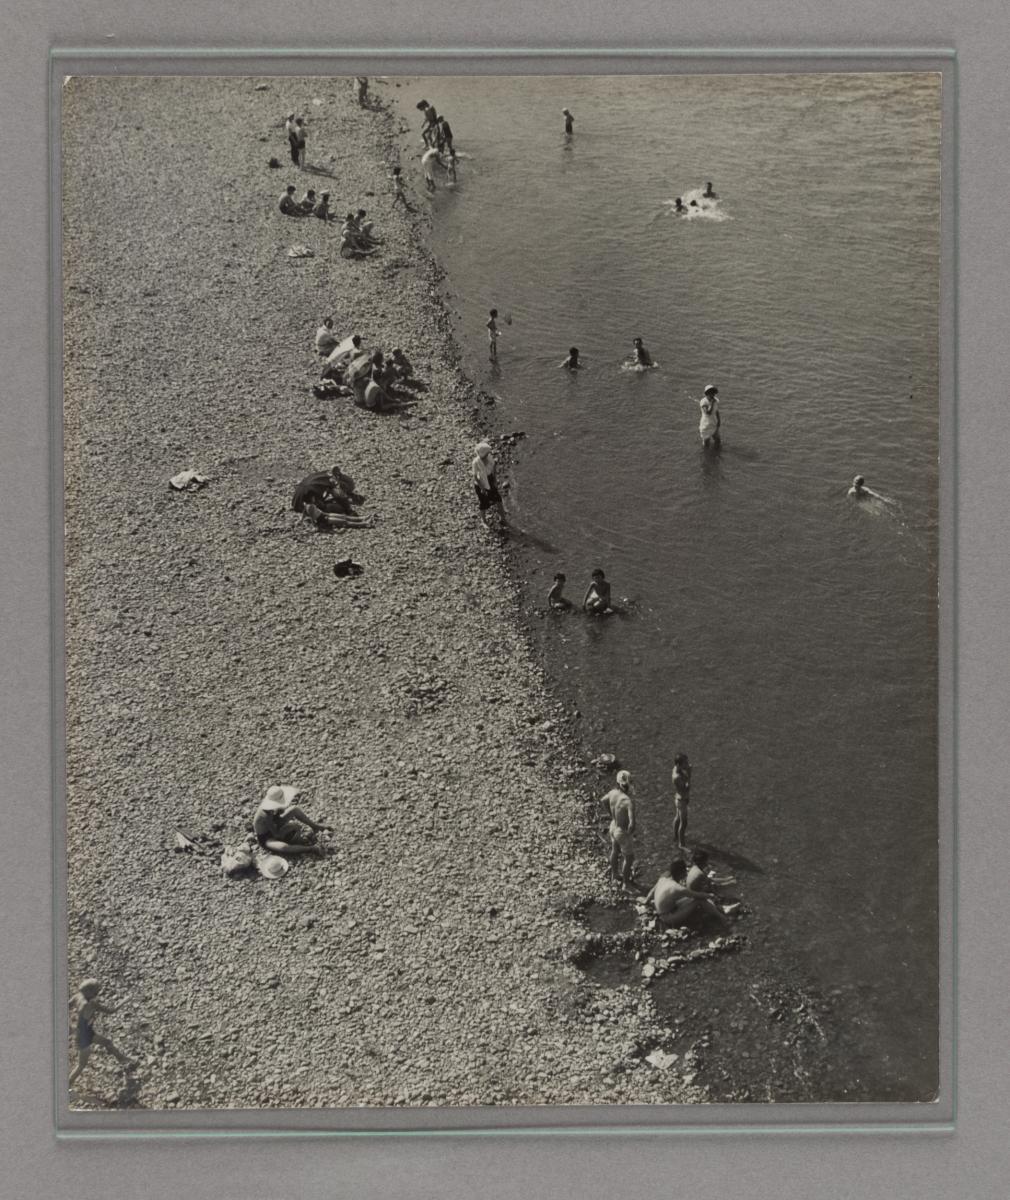 昭和30年頃の多摩川での水浴び風景の白黒写真